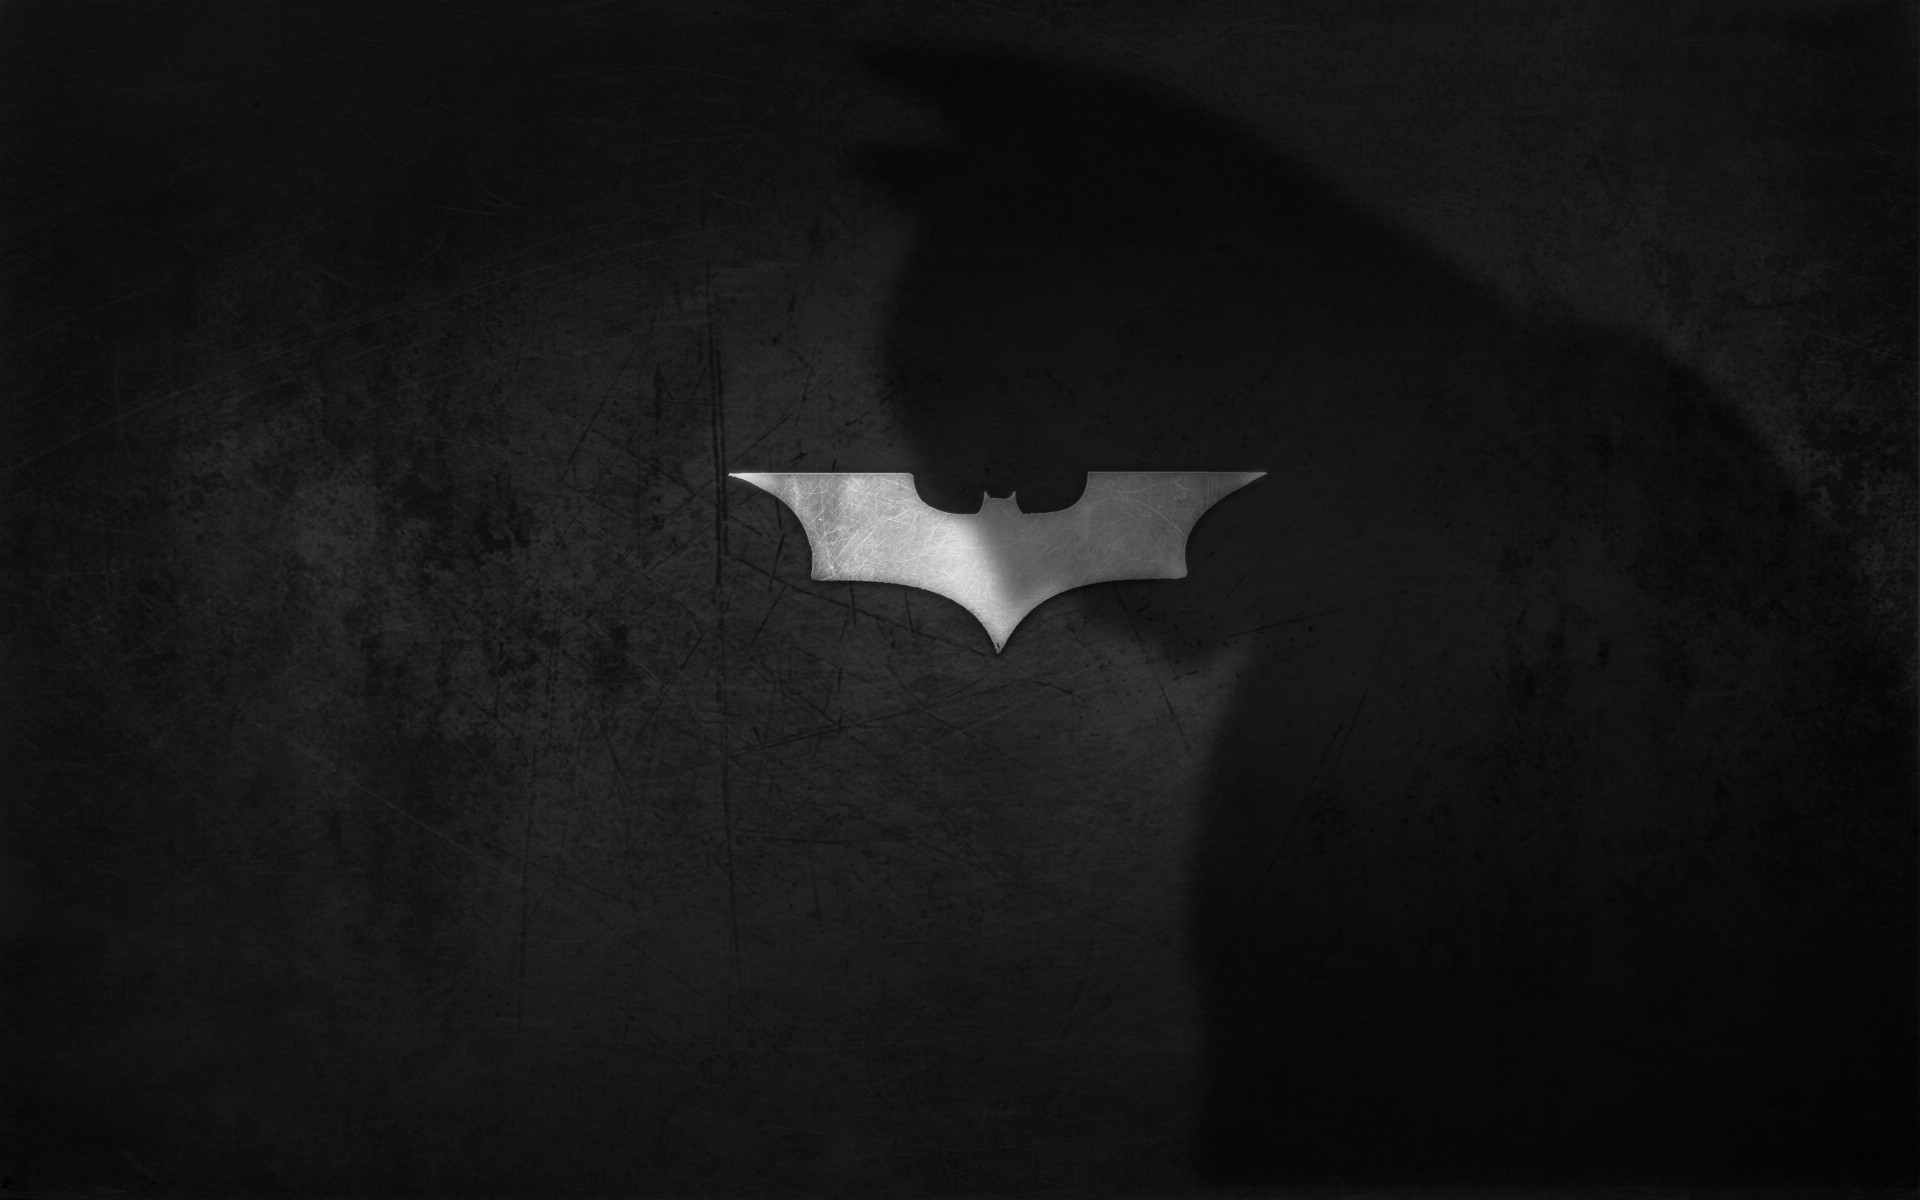 壁纸1920x1200蝙蝠侠 宽屏 桌酷精选一图 壁纸10壁纸 蝙蝠侠（宽屏）精壁纸 蝙蝠侠（宽屏）精图片 蝙蝠侠（宽屏）精素材 精选壁纸 精选图库 精选图片素材桌面壁纸